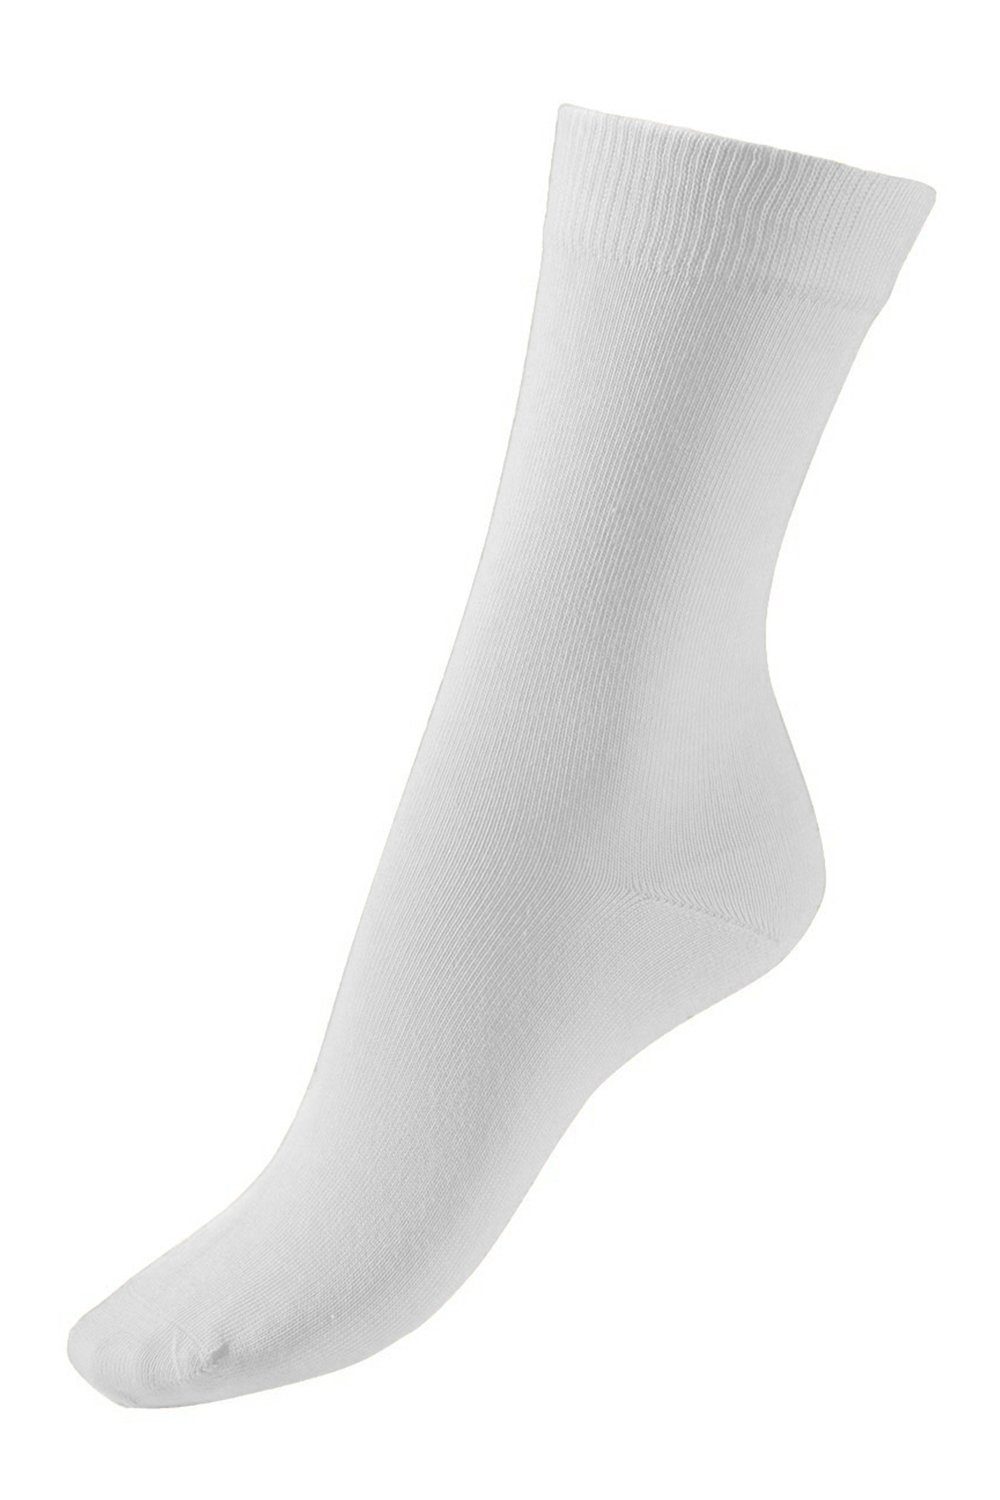 COMPRESSANA Socken Gesundheits-Socken GoWell MED Soft, 2er-Pack 3010 (2er-Pack) weiß